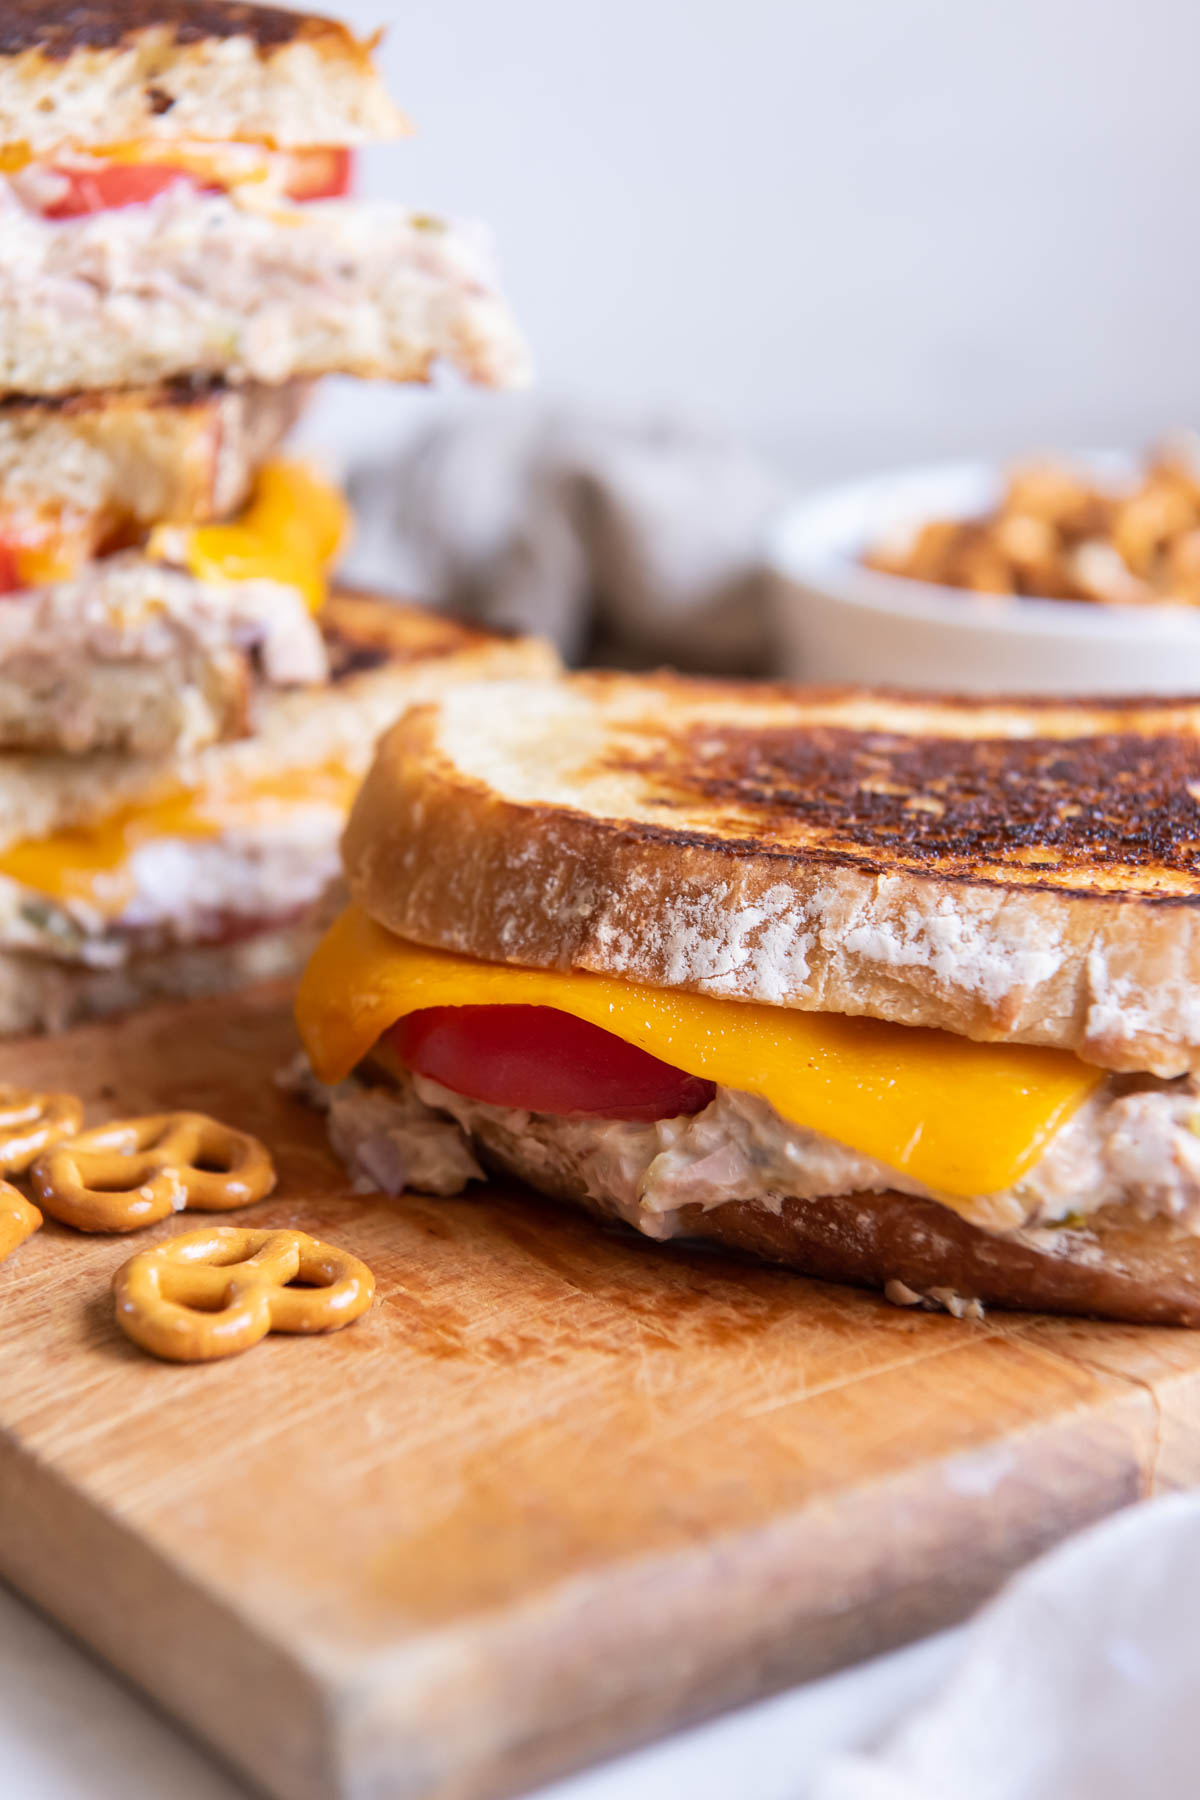 Tuna melt sandwich on a cutting board with a few pretzels on the side.